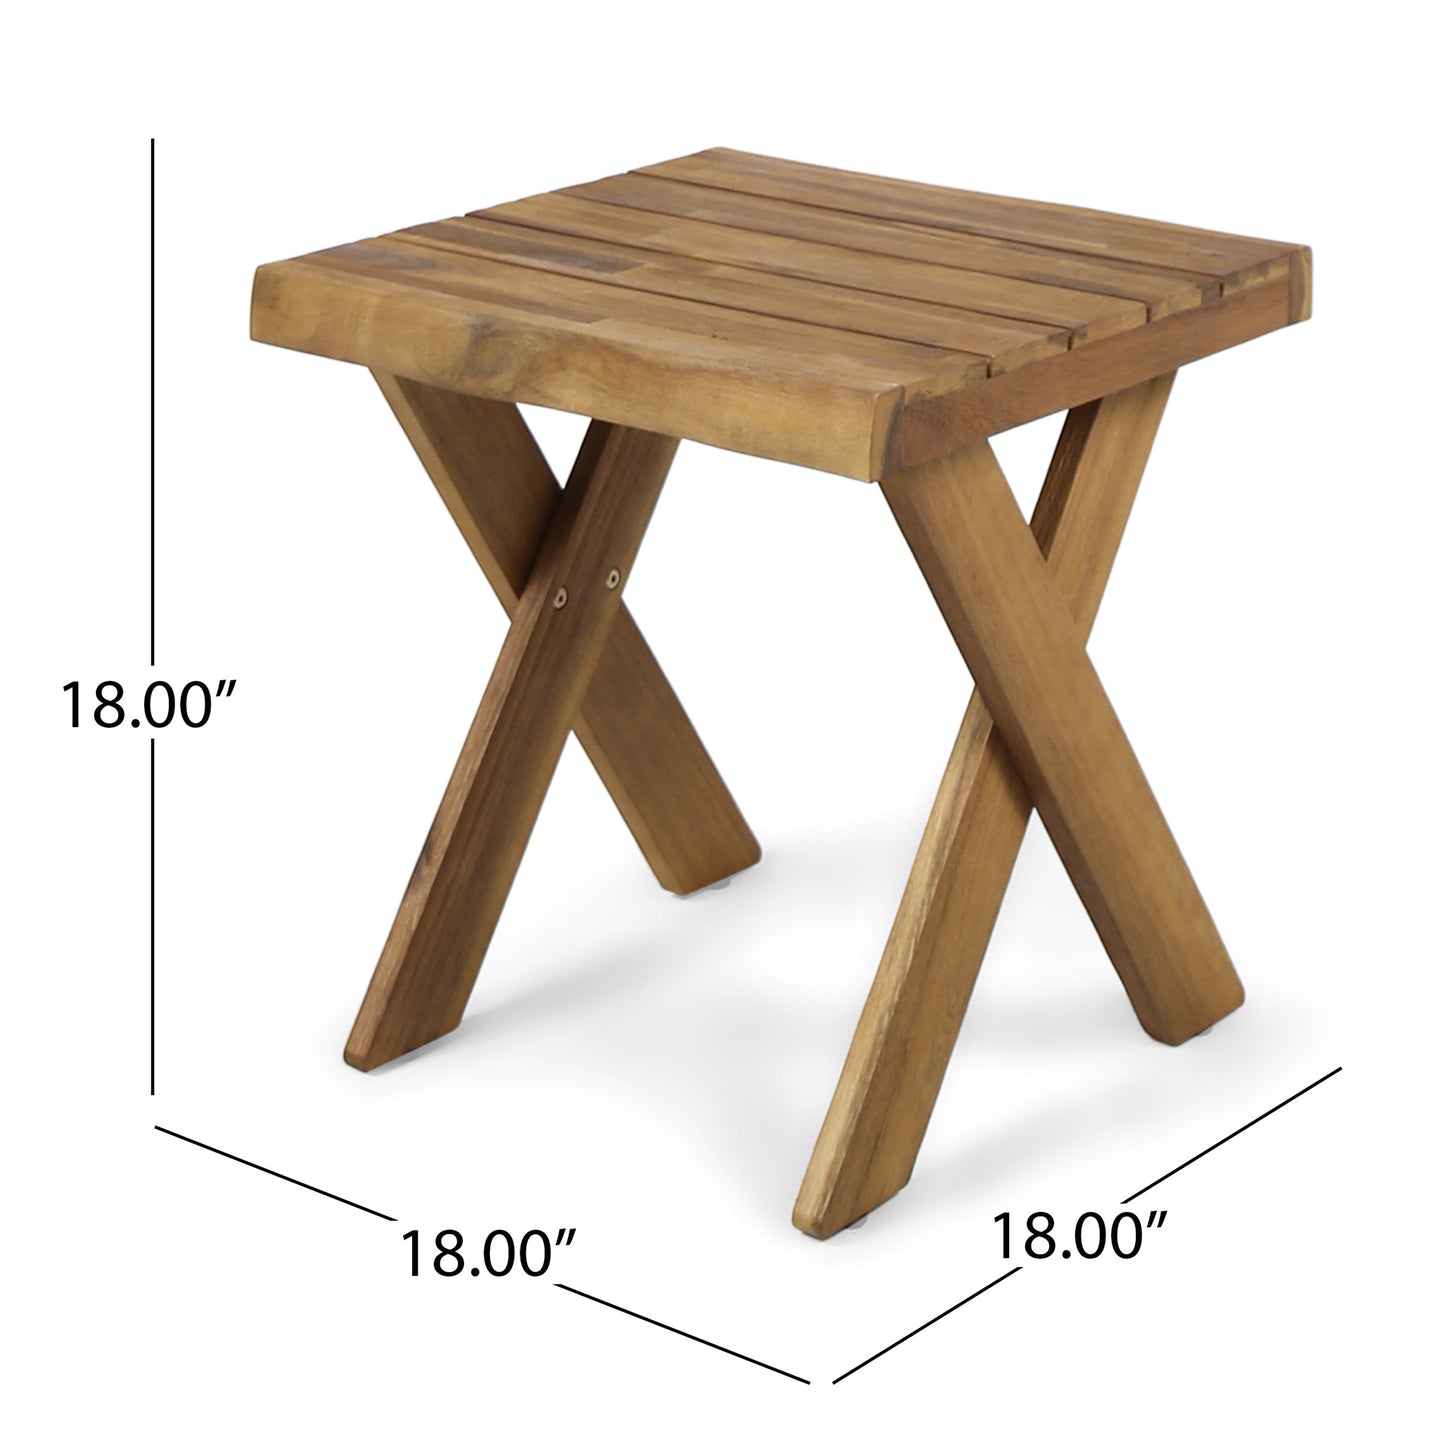 Farrells Indoor/Outdoor Acacia Wood Side Table